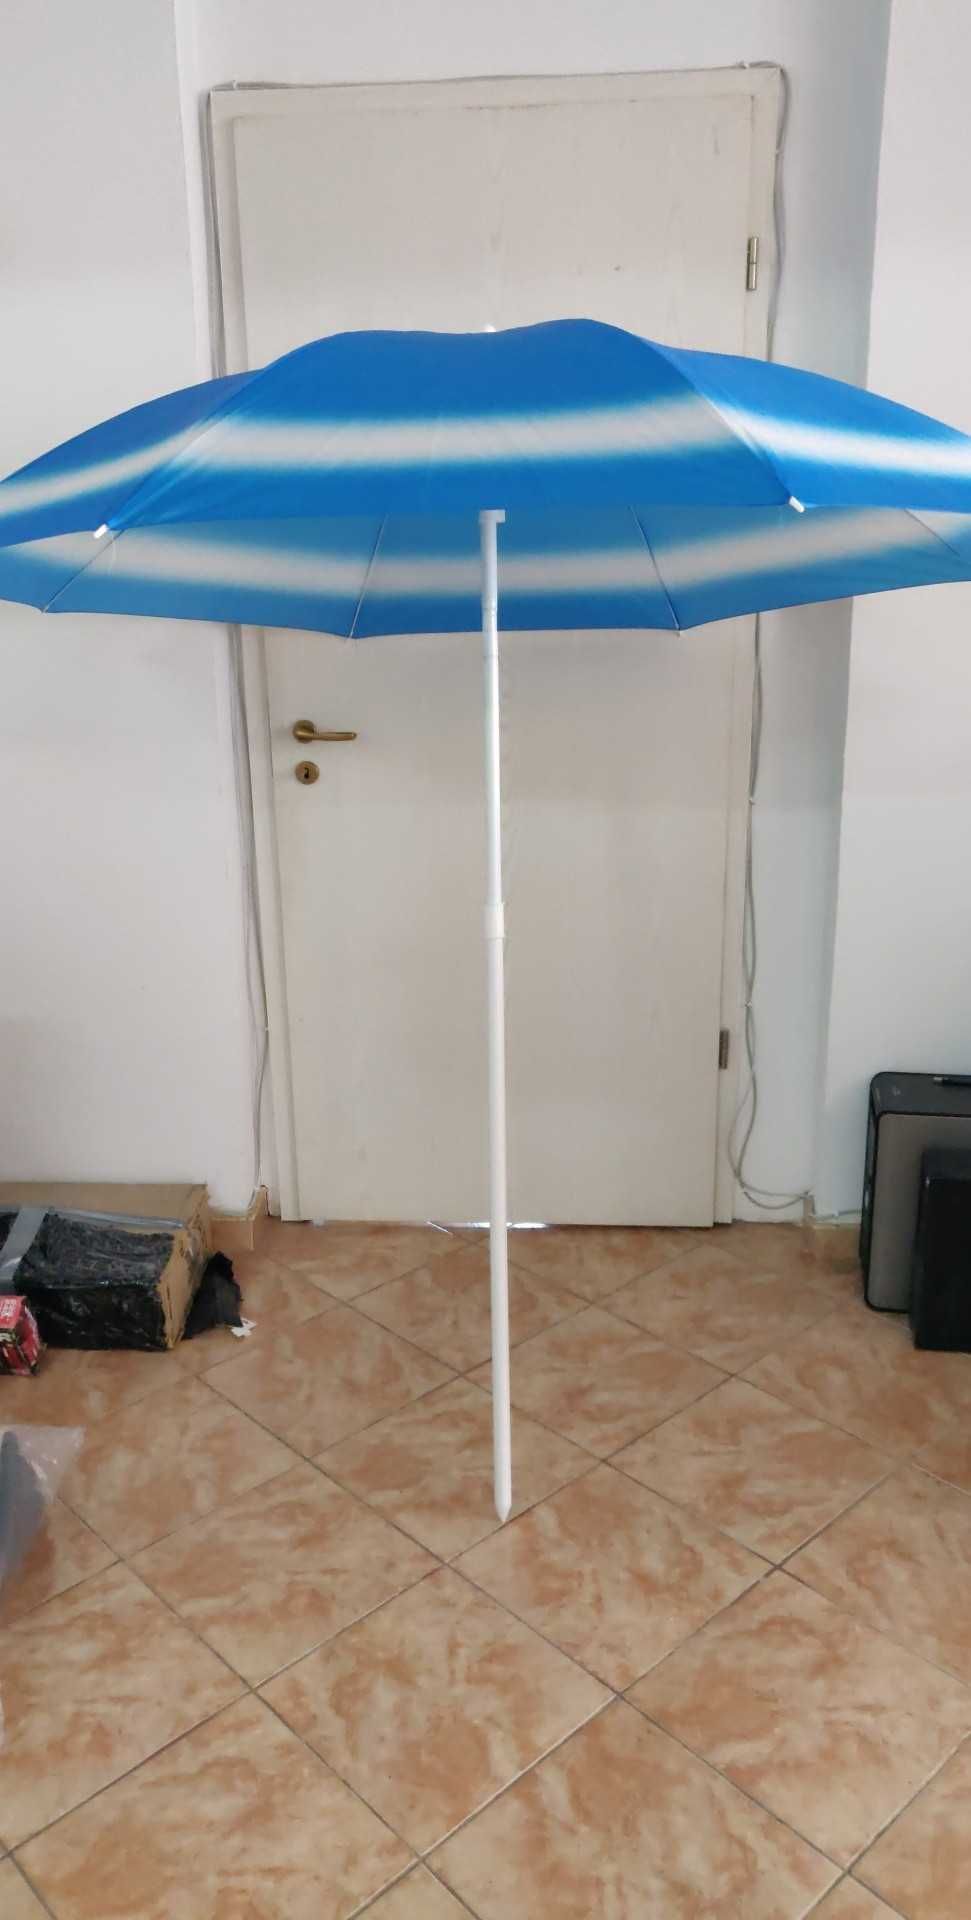 Umbrela de plaja resigilat (Diferite modele)